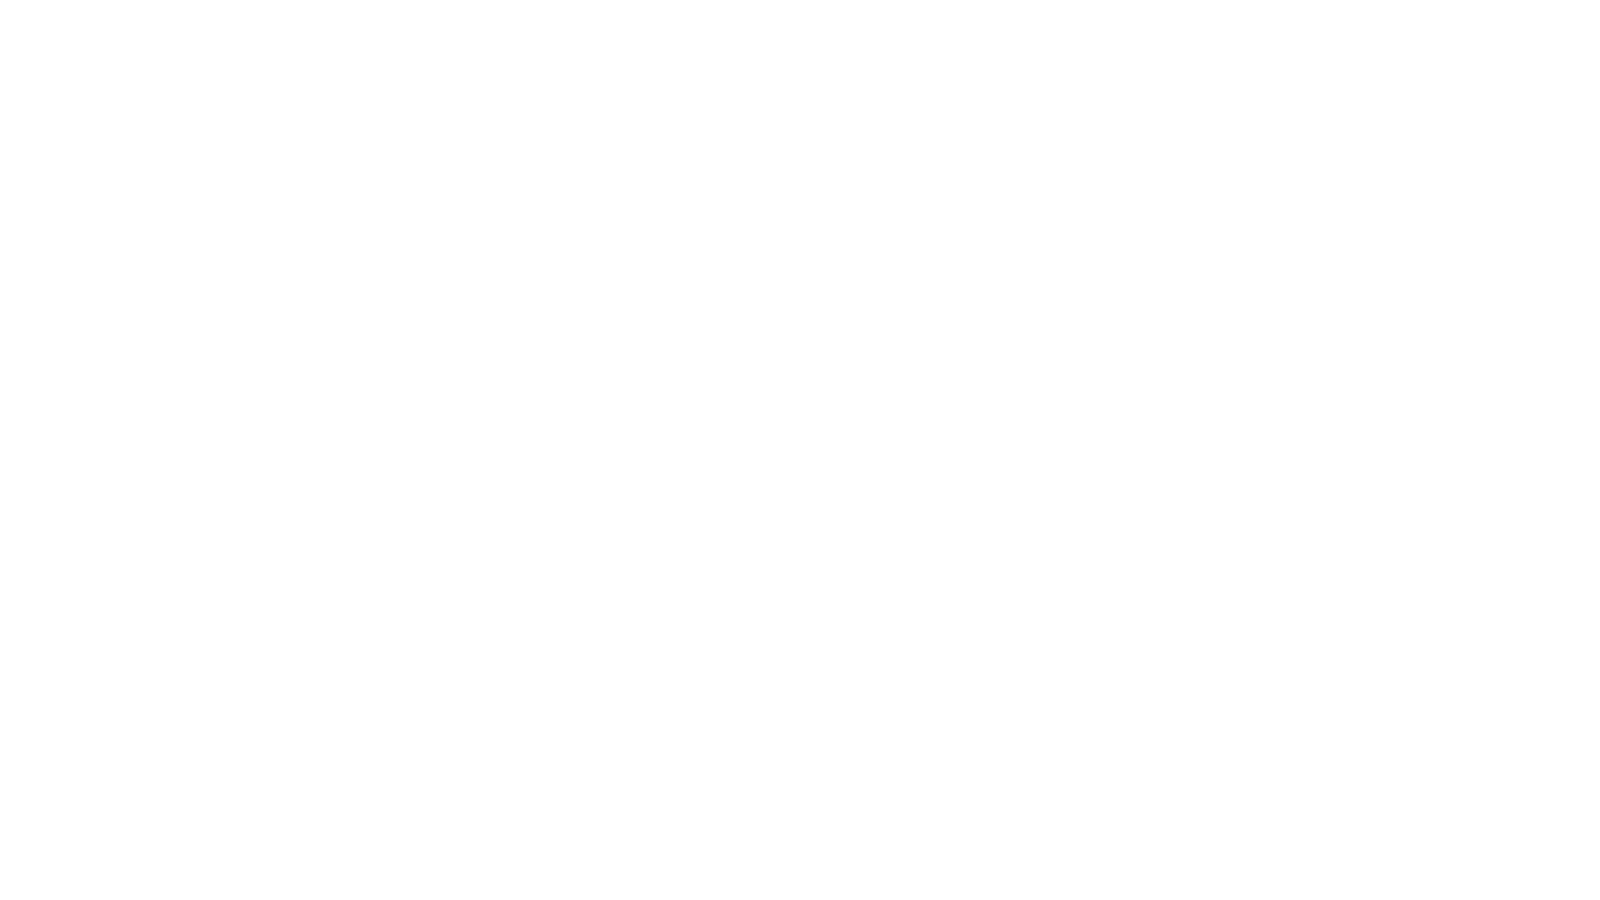 Breitband und Digitalfunk miteinander Verbinden